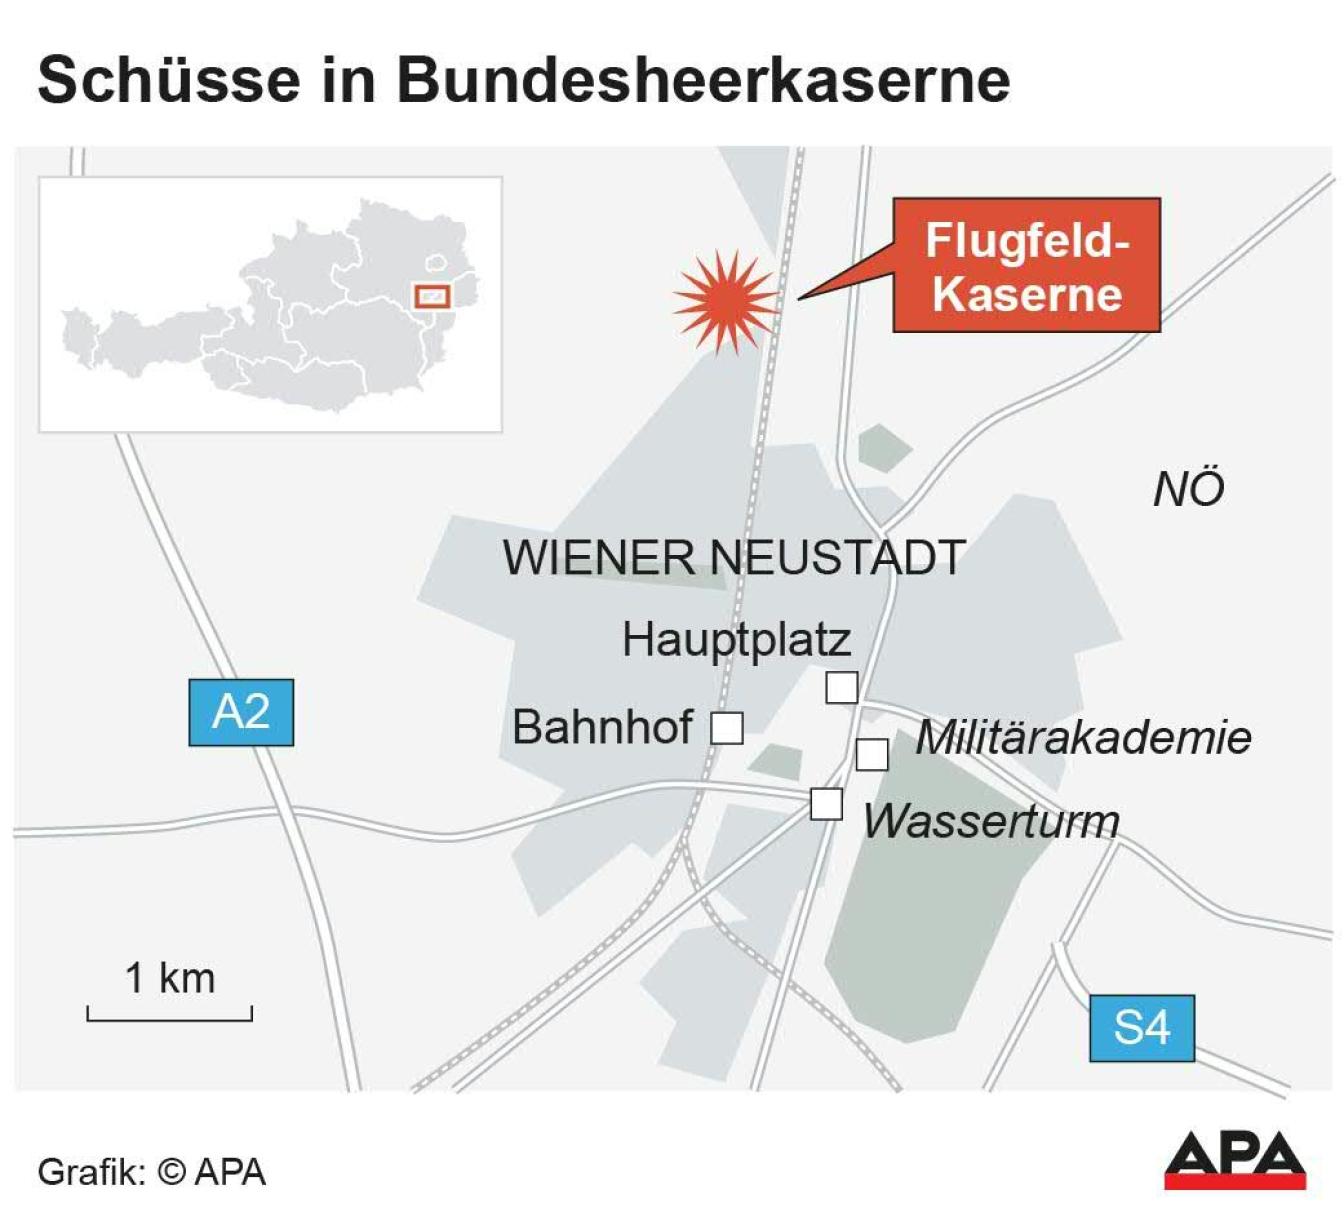 Toter und Verletzter nach Schüssen in Flugfeldkaserne Wiener Neustadt